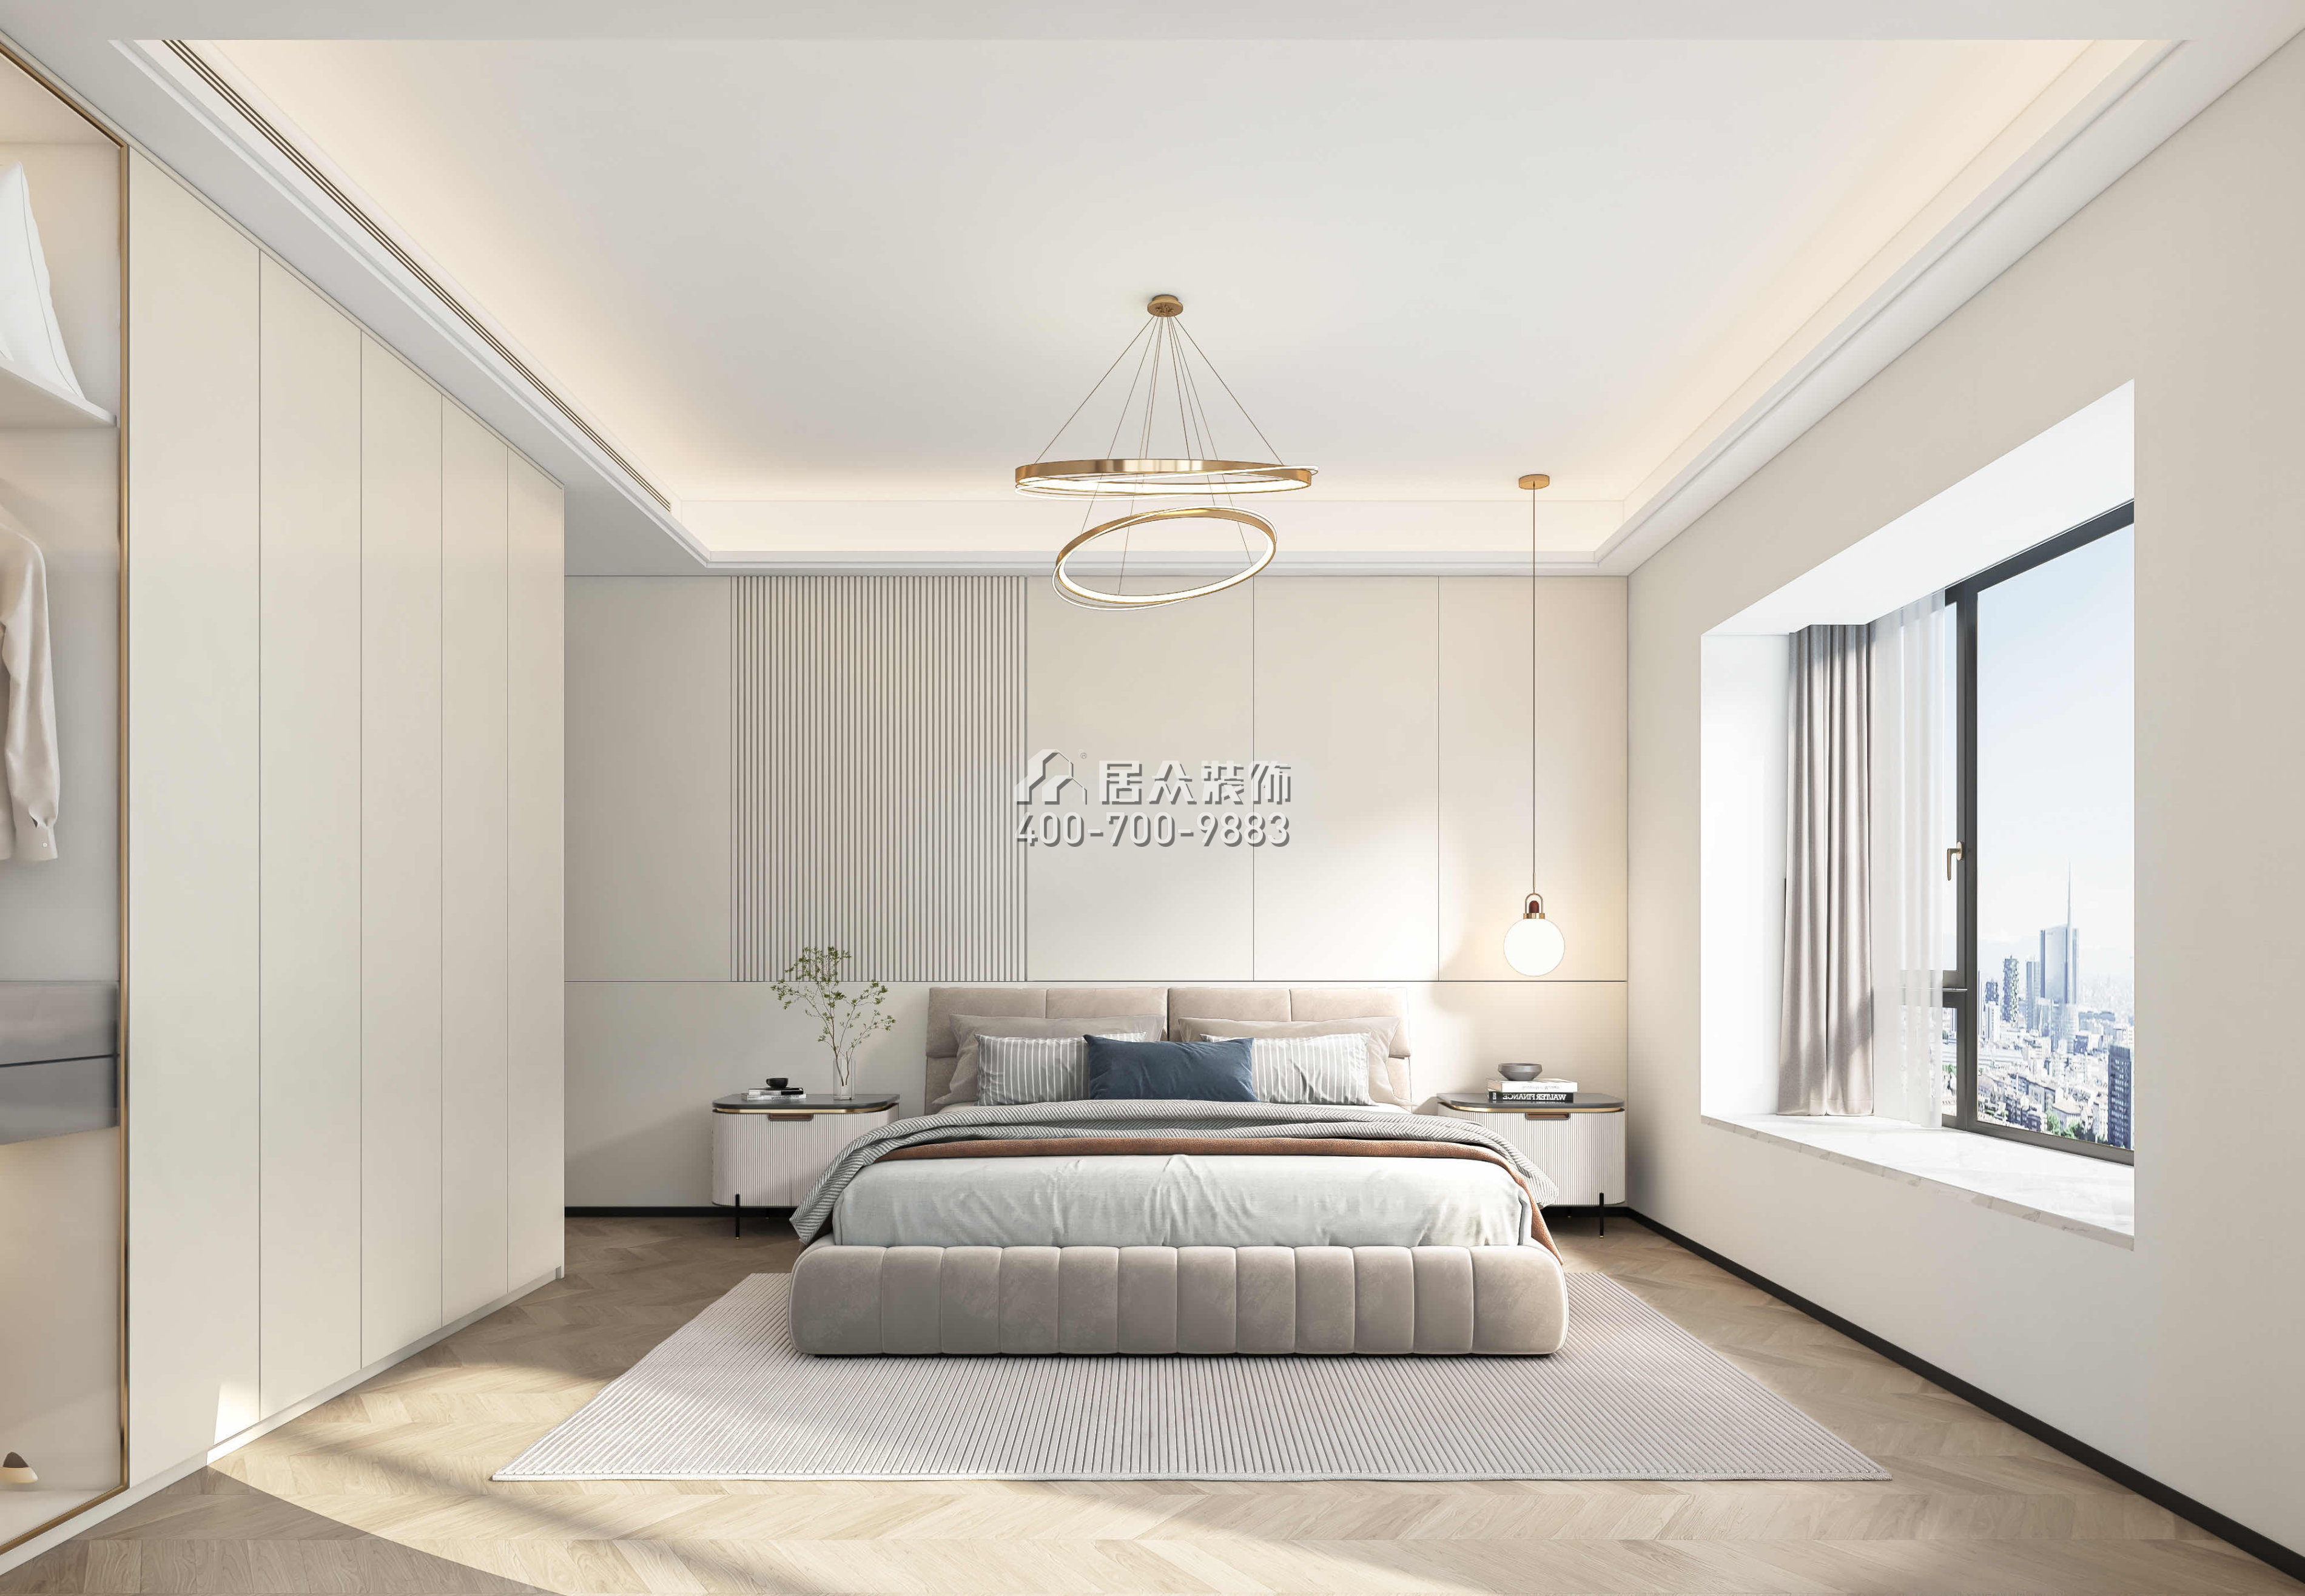 蔚蓝海岸一期130平方米现代简约风格平层户型卧室装修效果图